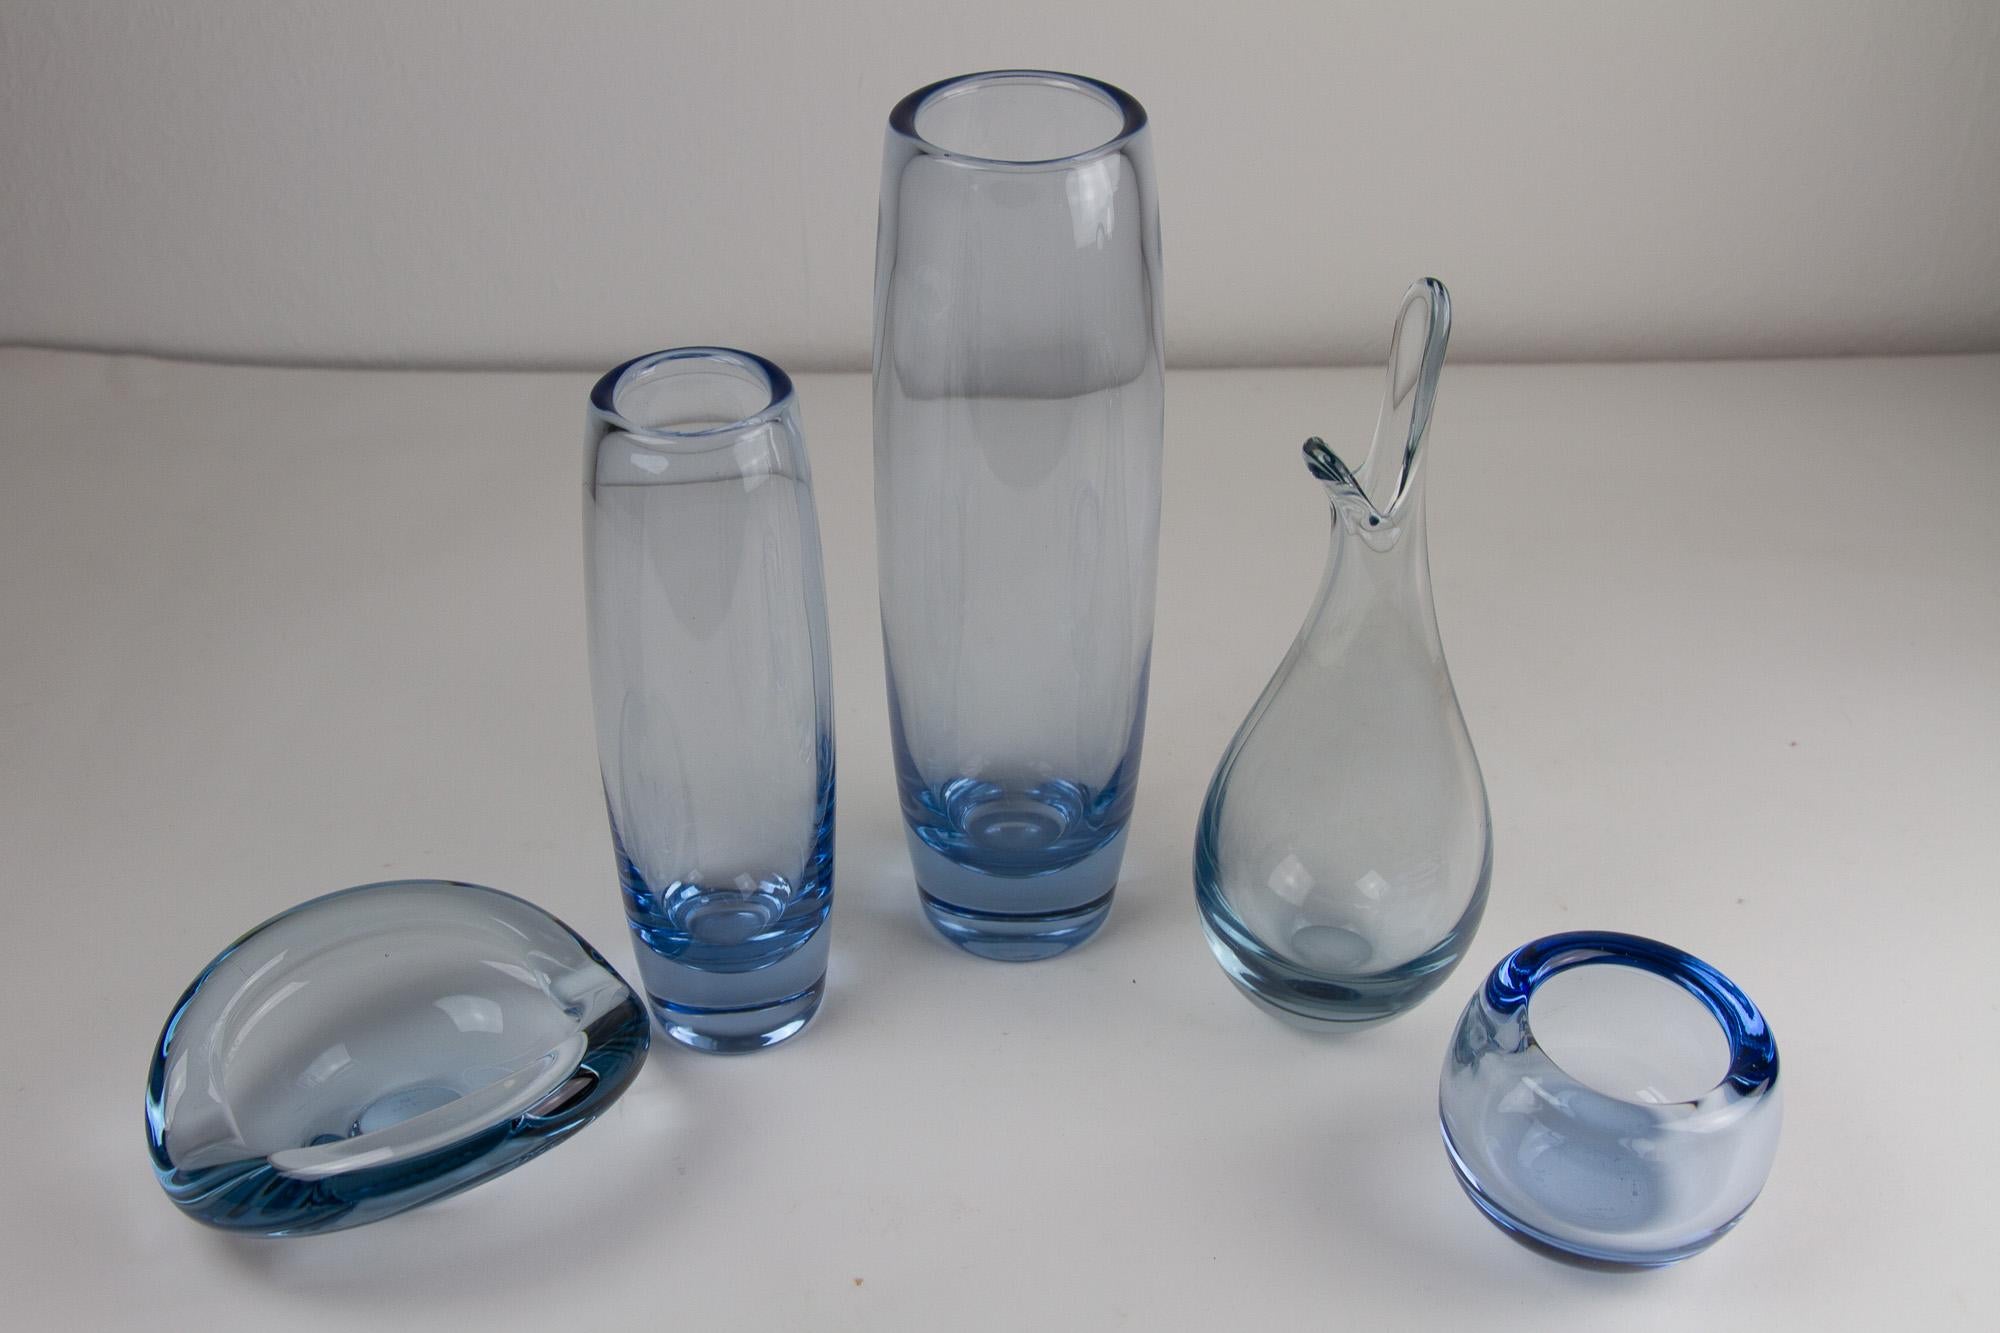 Vintage Danish Holmegaard Aqua Vases von Per Lütken, 1960er Jahre. Satz von 5.
Wunderschönes Set dänischer Vasen aus aquablauem mundgeblasenem Glas, entworfen von Per Lütken und hergestellt von Holmegaard Glassworks, Dänemark, aus der Mitte des